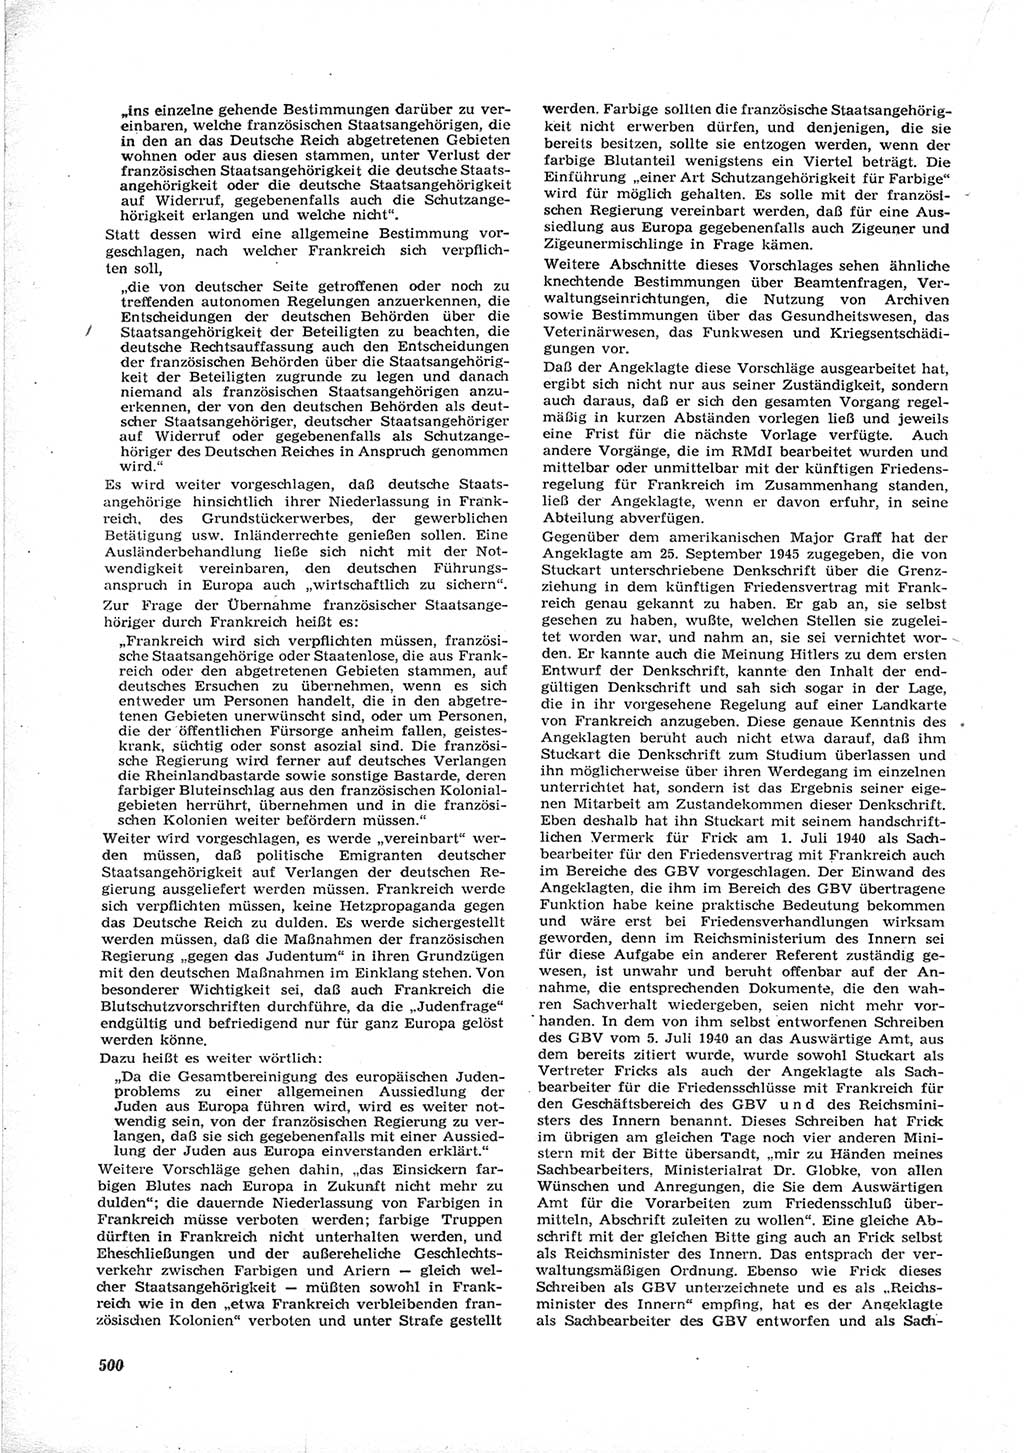 Neue Justiz (NJ), Zeitschrift für Recht und Rechtswissenschaft [Deutsche Demokratische Republik (DDR)], 17. Jahrgang 1963, Seite 500 (NJ DDR 1963, S. 500)